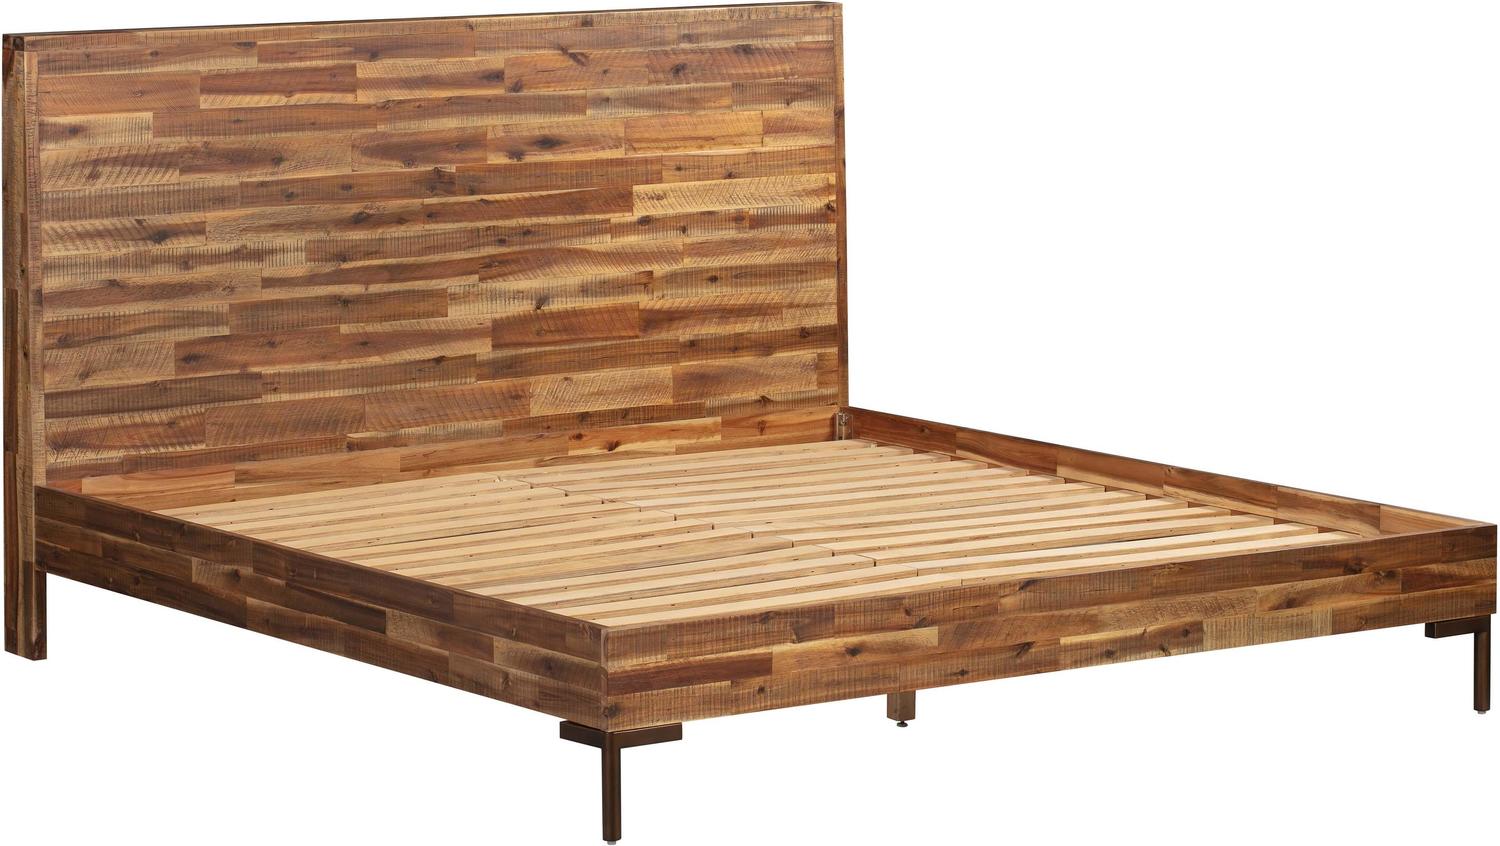 upholstered bedframes Contemporary Design Furniture Beds Beds Brown